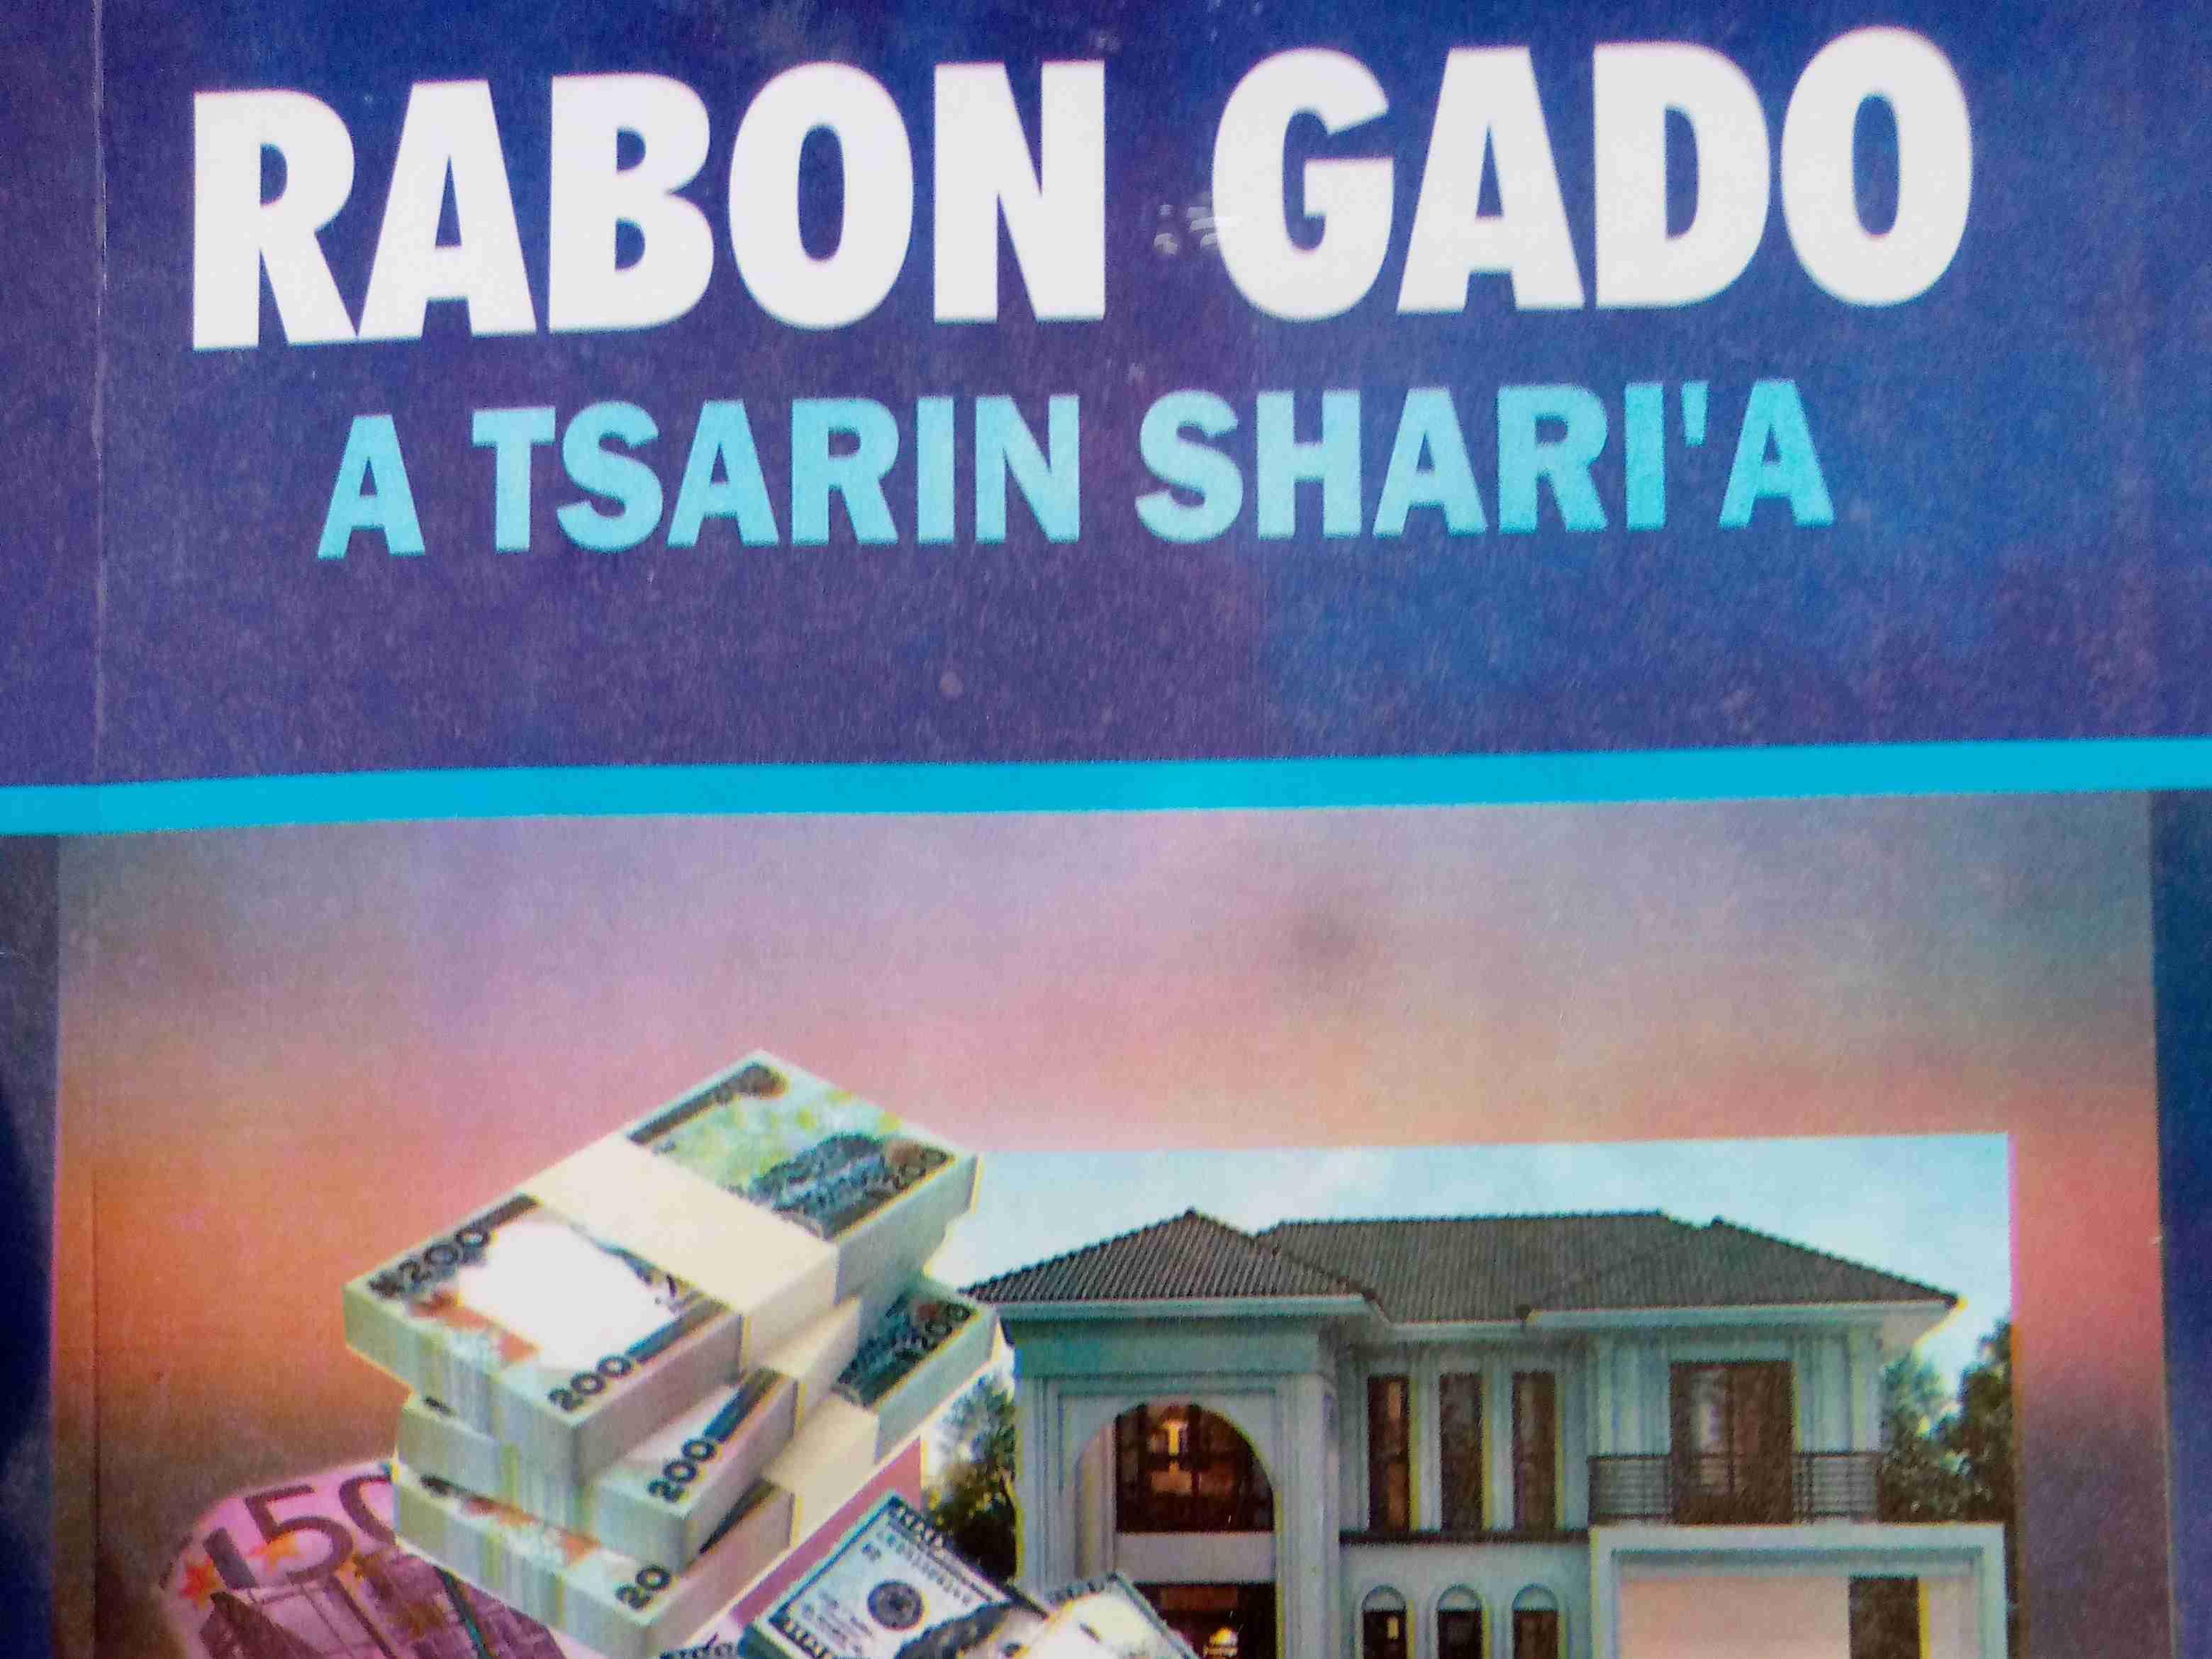 Rabon Gado A Tsarin Shari'a